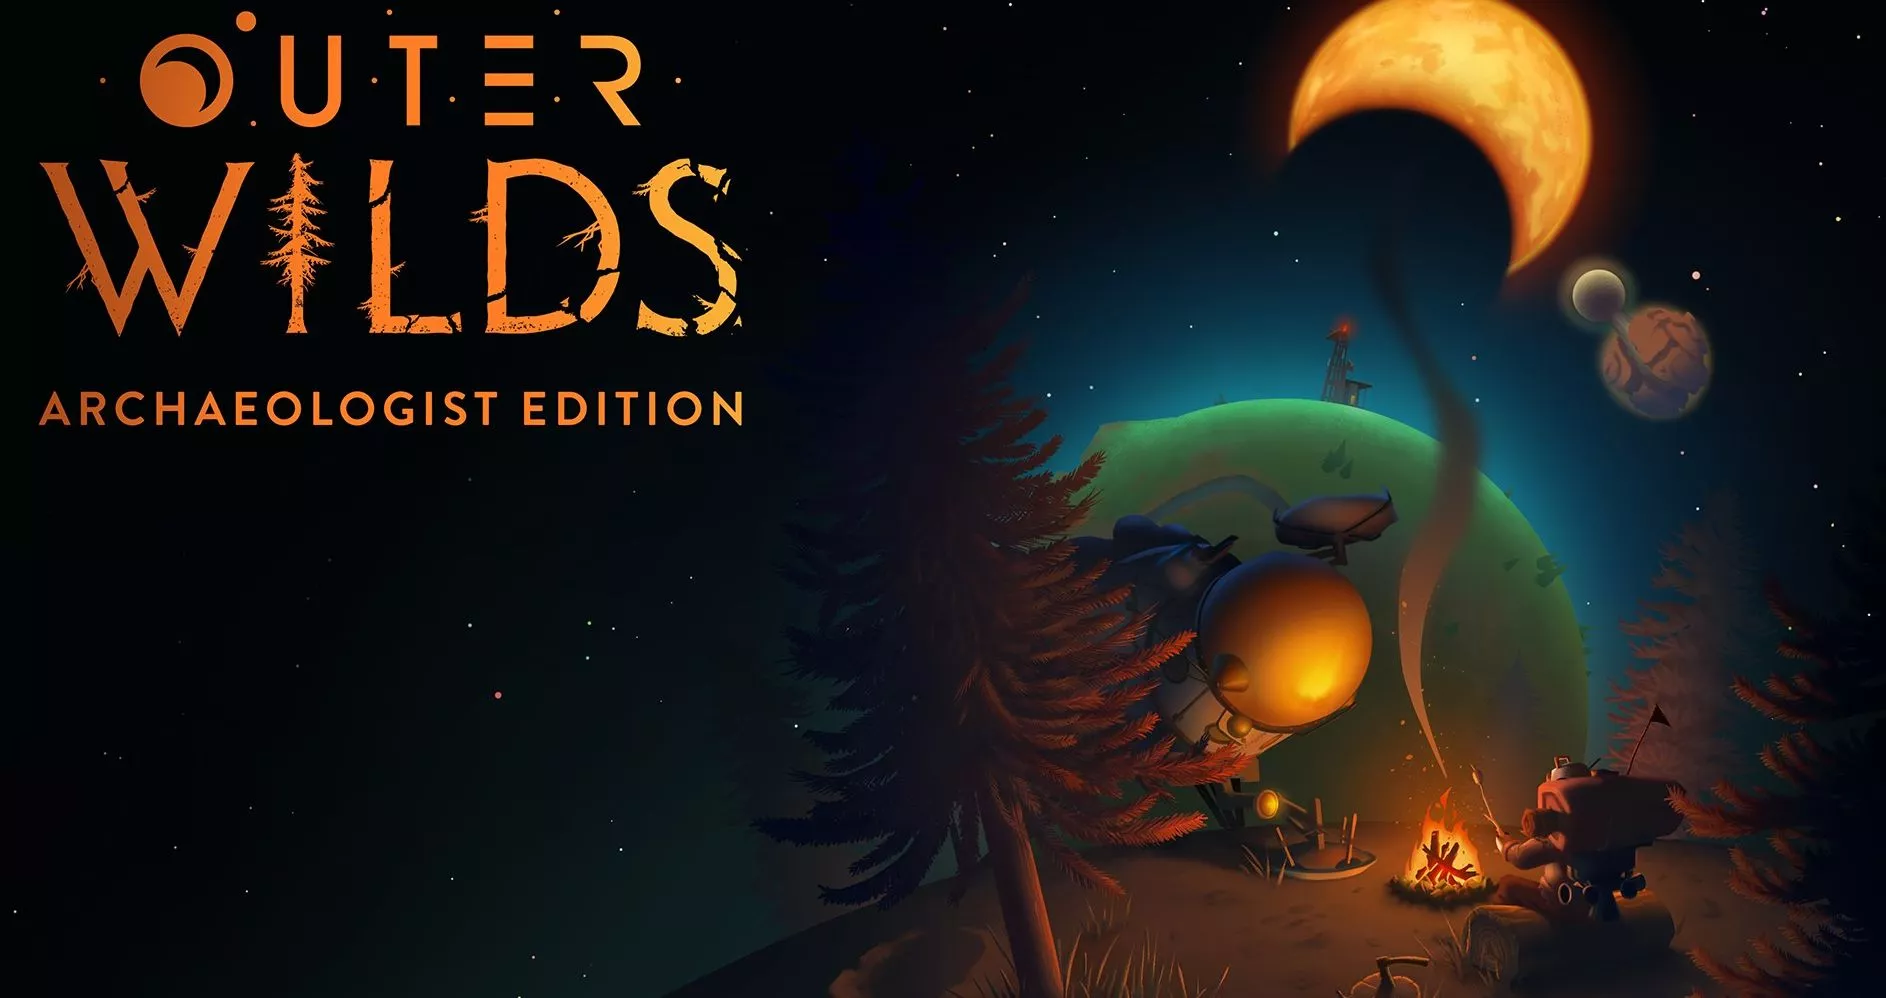 Outer Wilds: Archaeologist Edition für Nintendo Switch bekanntgegeben Heropic